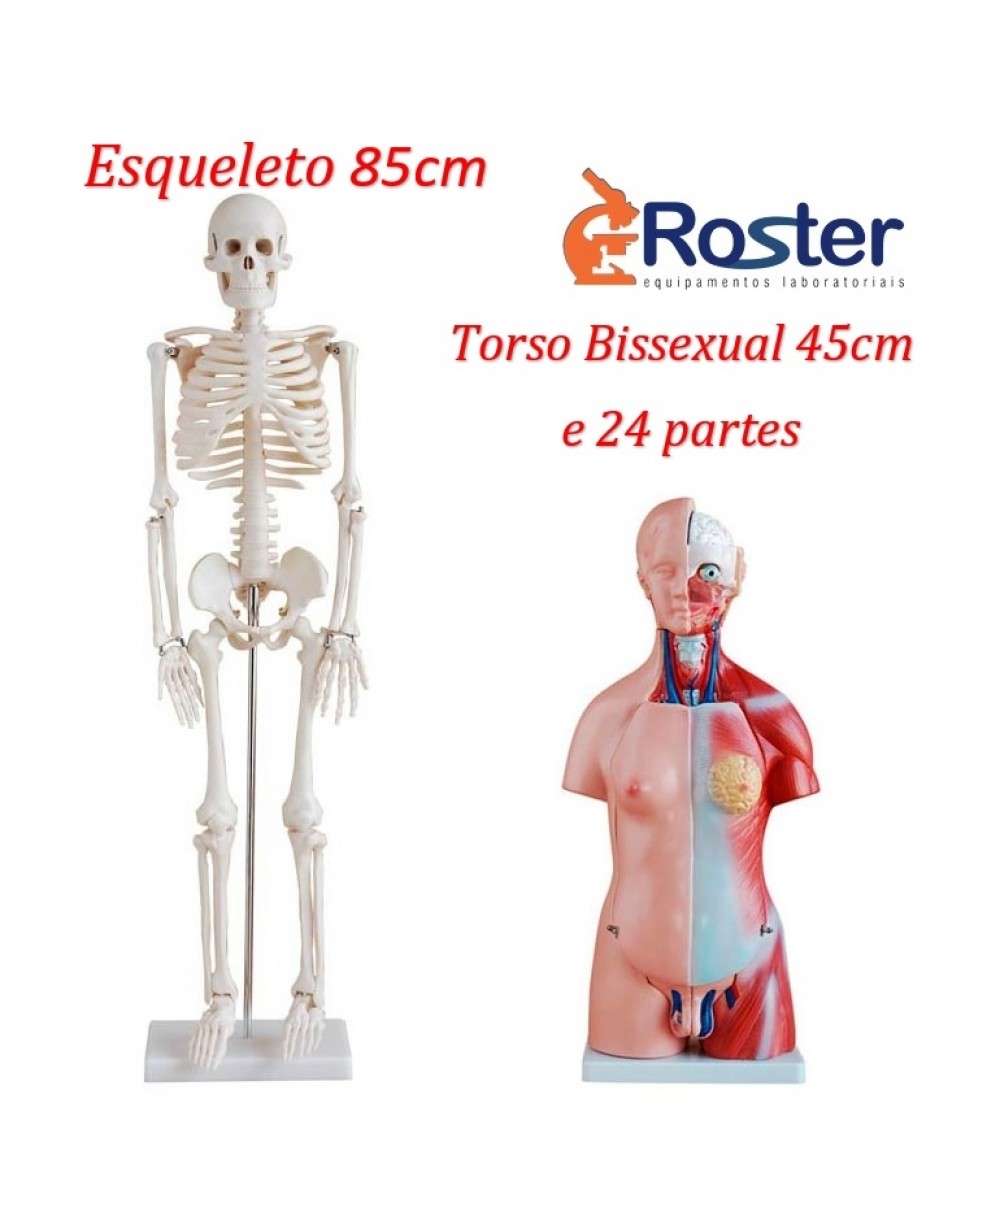 Esqueleto Humano 85 cm com Suporte + Torso Humano 45cm com 24